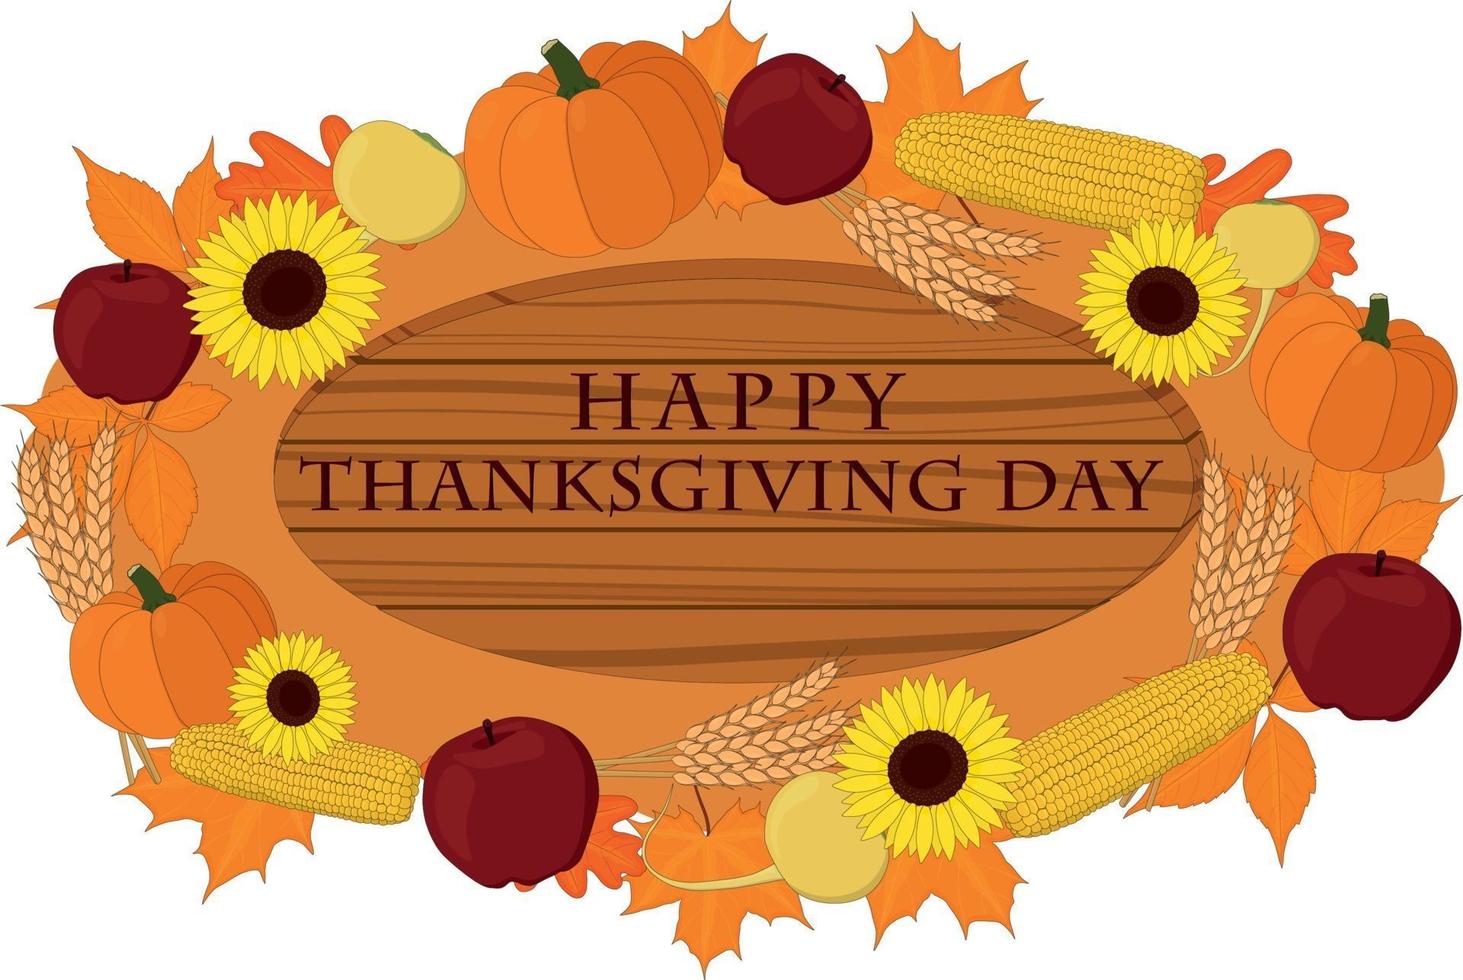 Happy Thanksgiving Day Holzschild mit Gemüse dekoriert vektor